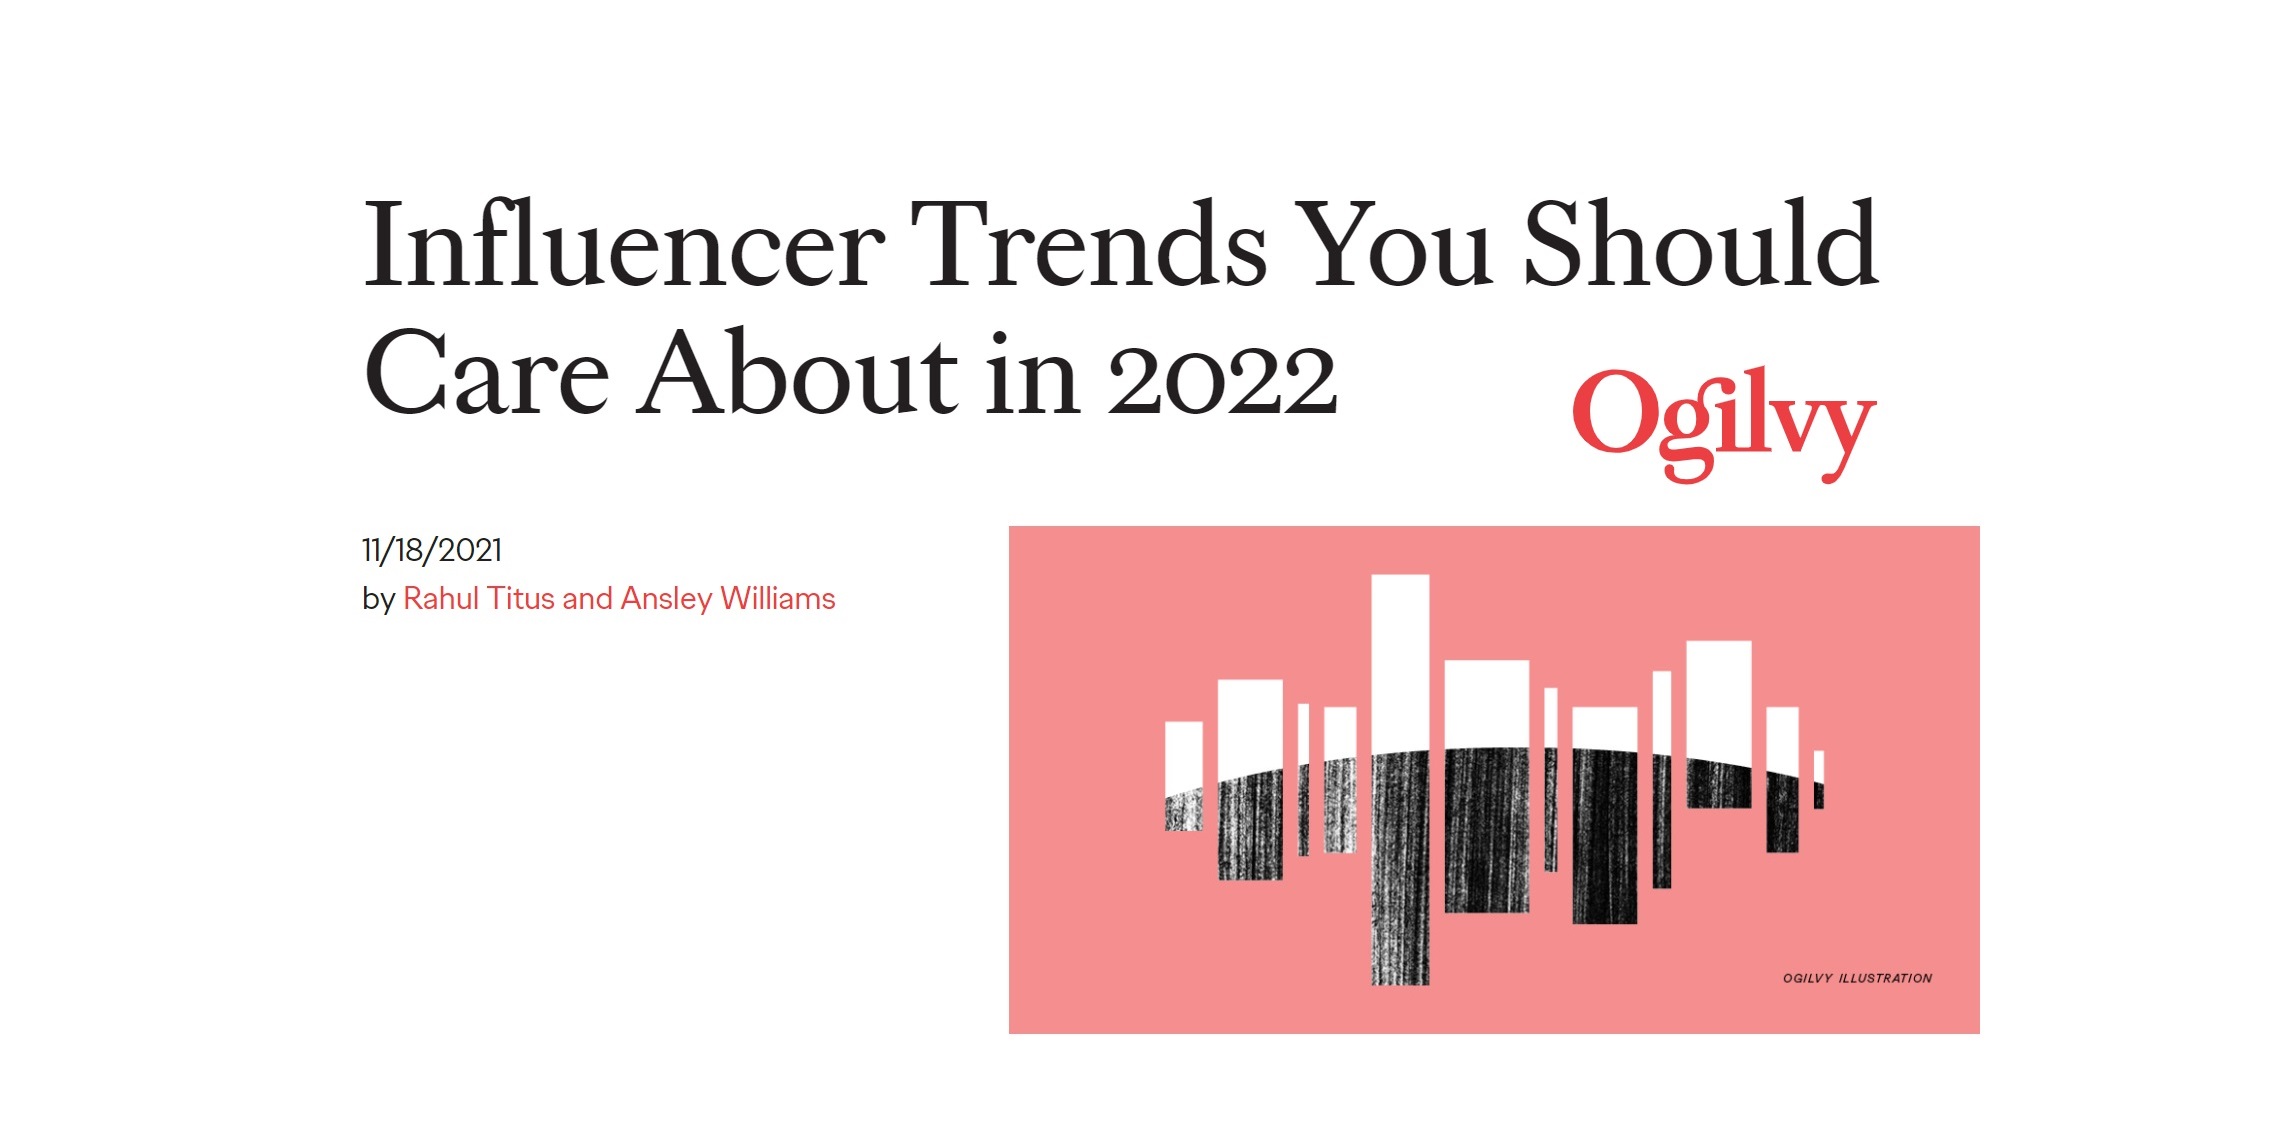 influencers, trends, ogilvy, 2022, metaverso, programapublicidad